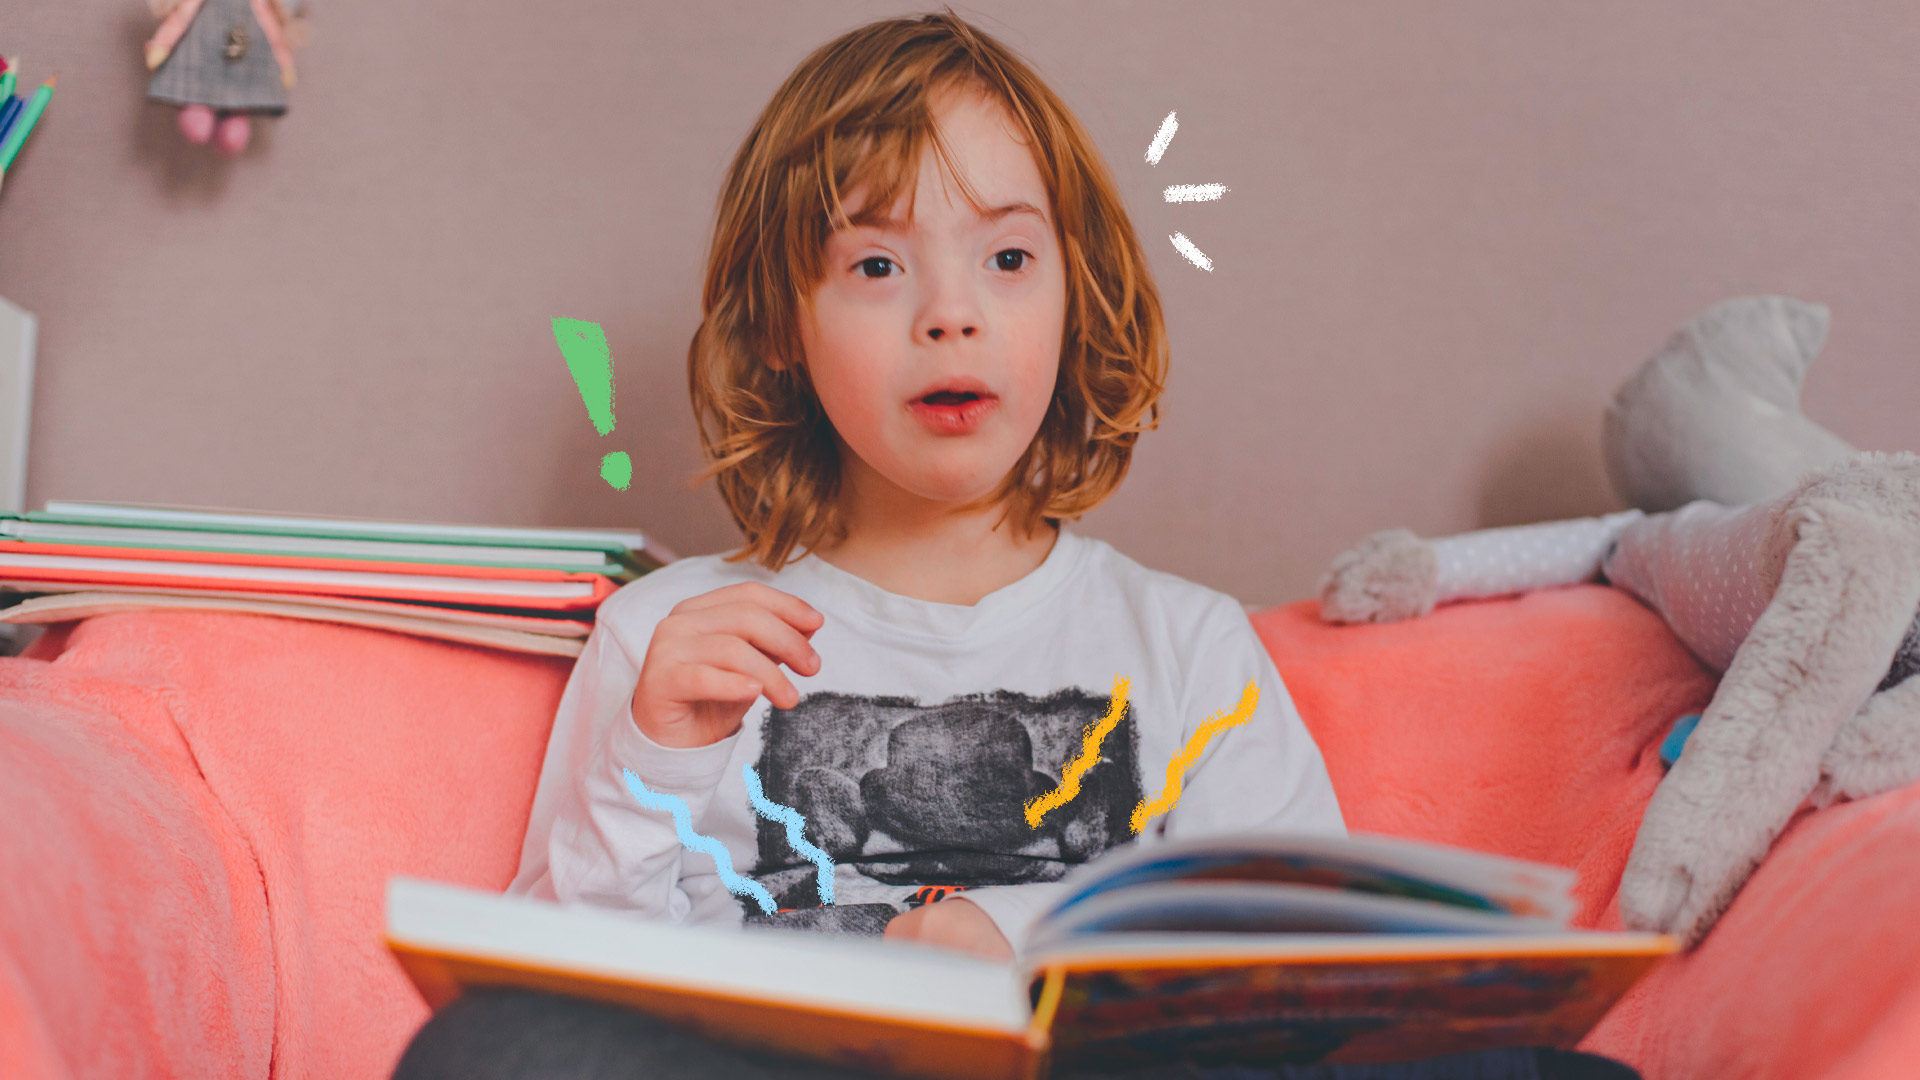 Imagem de um menino com síndrome de Down está sentado num sofá com alguns brinquedos em volta e segurando no colo um livro aberto. Texto sobre parlendas